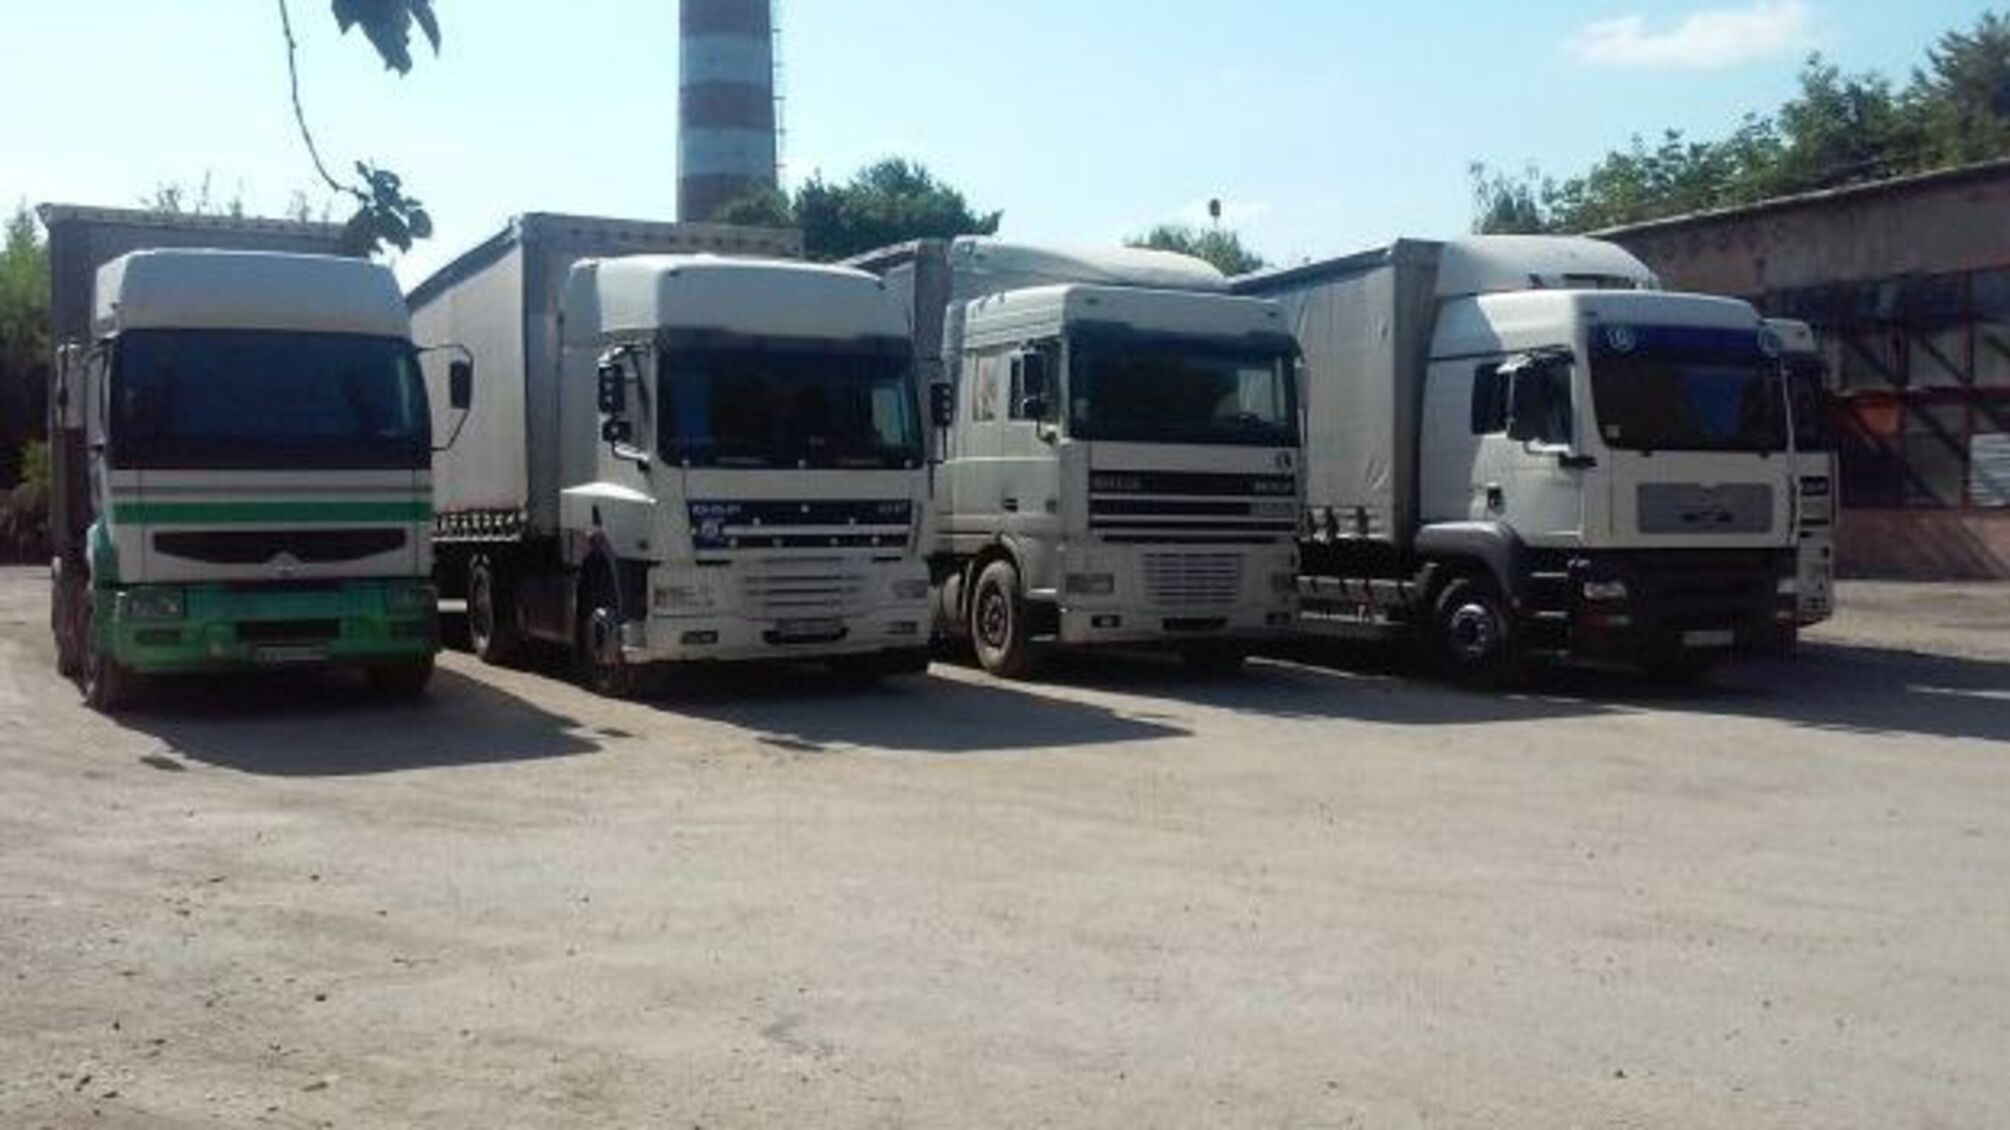 Харківський нардеп задекларував цілий автопарк вантажівок